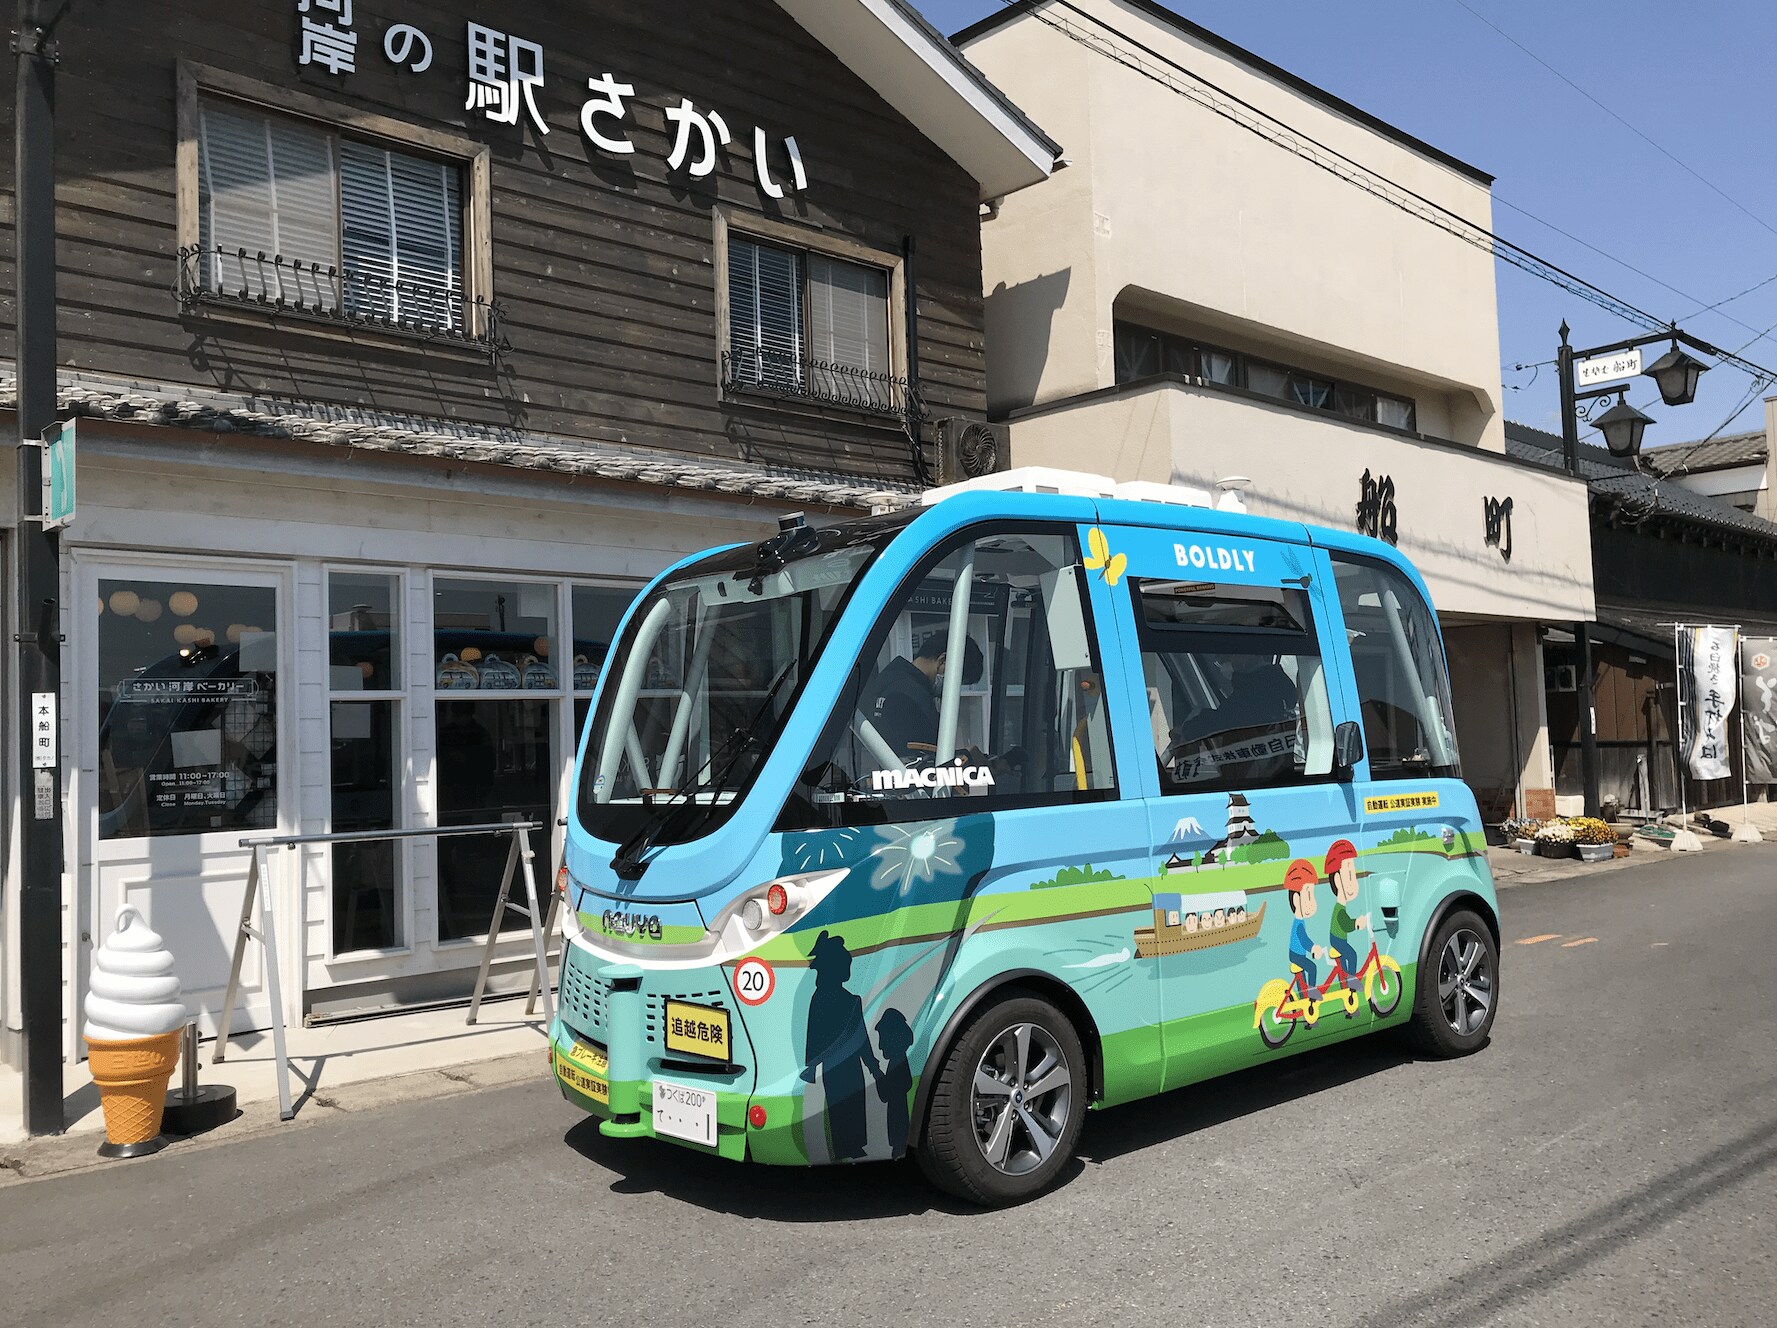 茨城「河岸のまち」で自動運転路線バスに乗ってみた高齢化進む茨城県境町が導入した「横に動くエレベーター」 - 自動車の今と未来